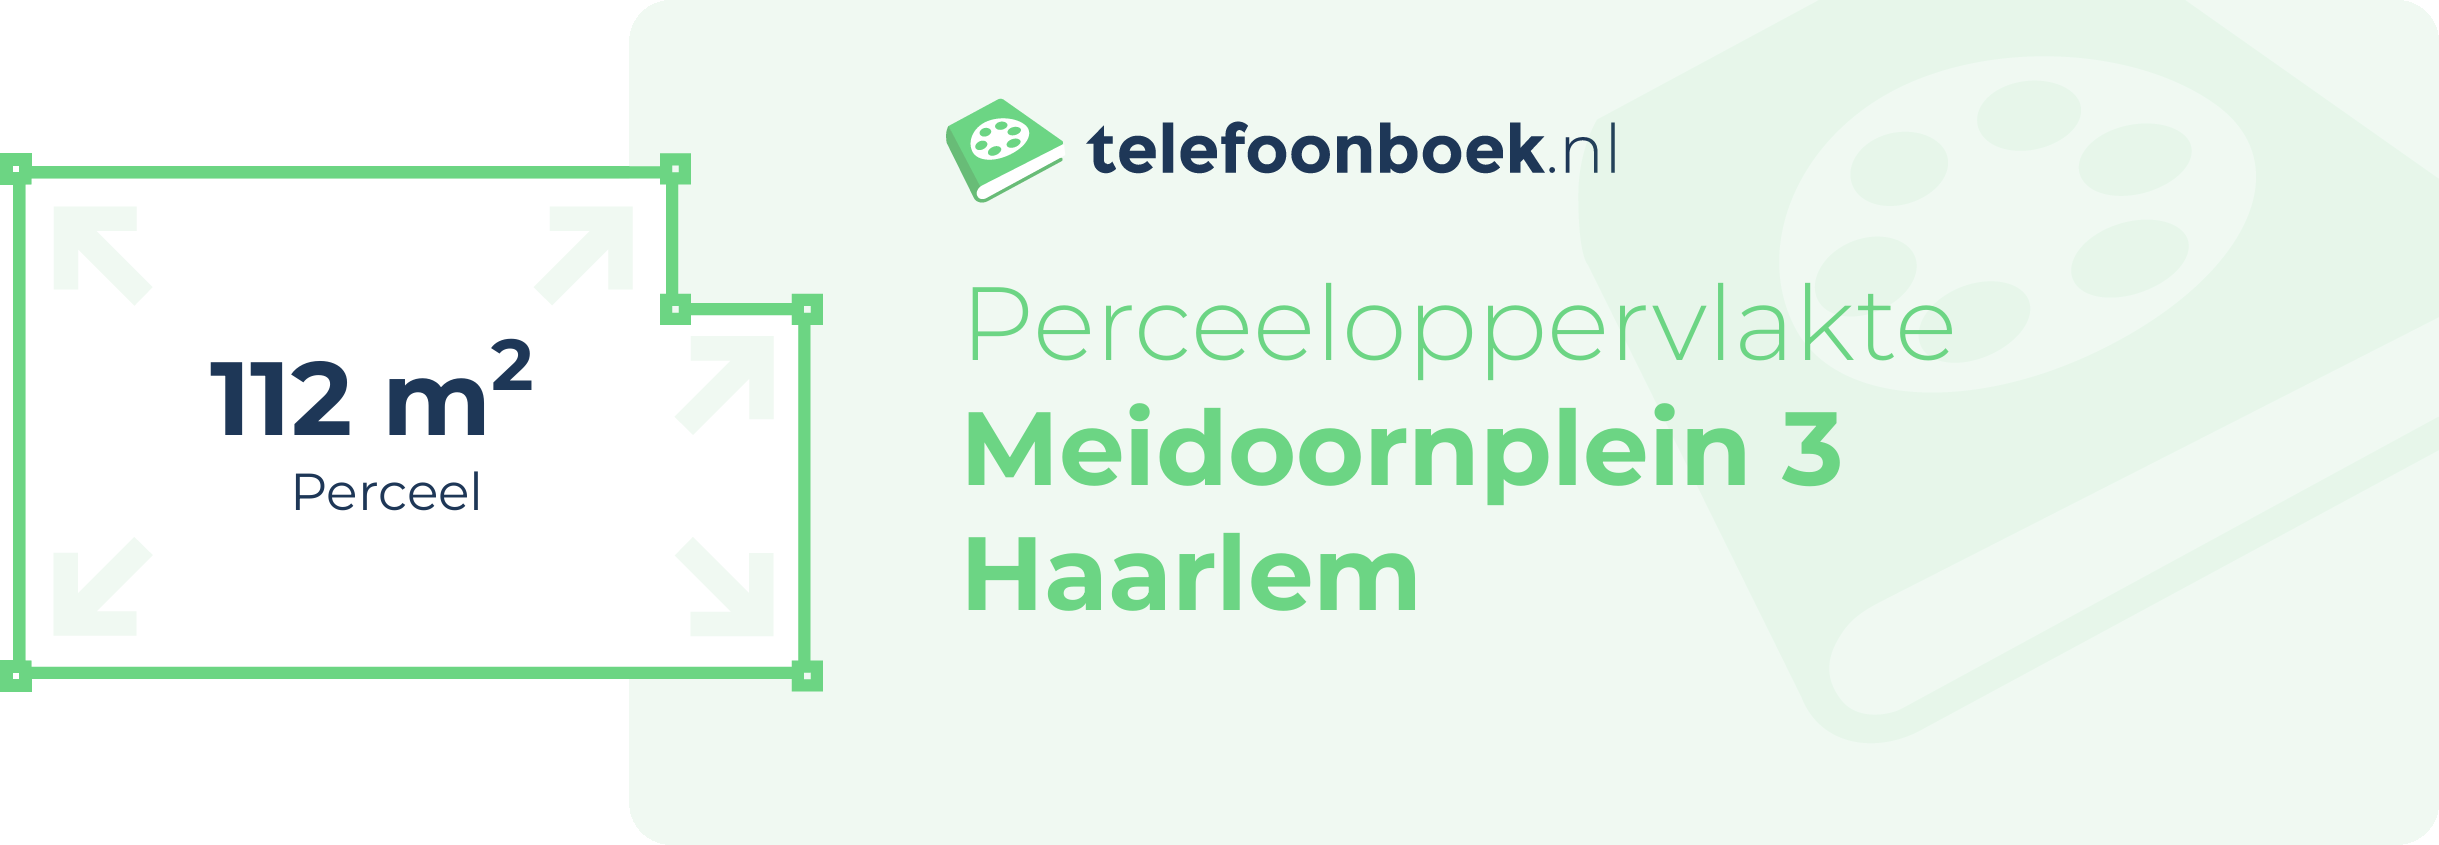 Perceeloppervlakte Meidoornplein 3 Haarlem